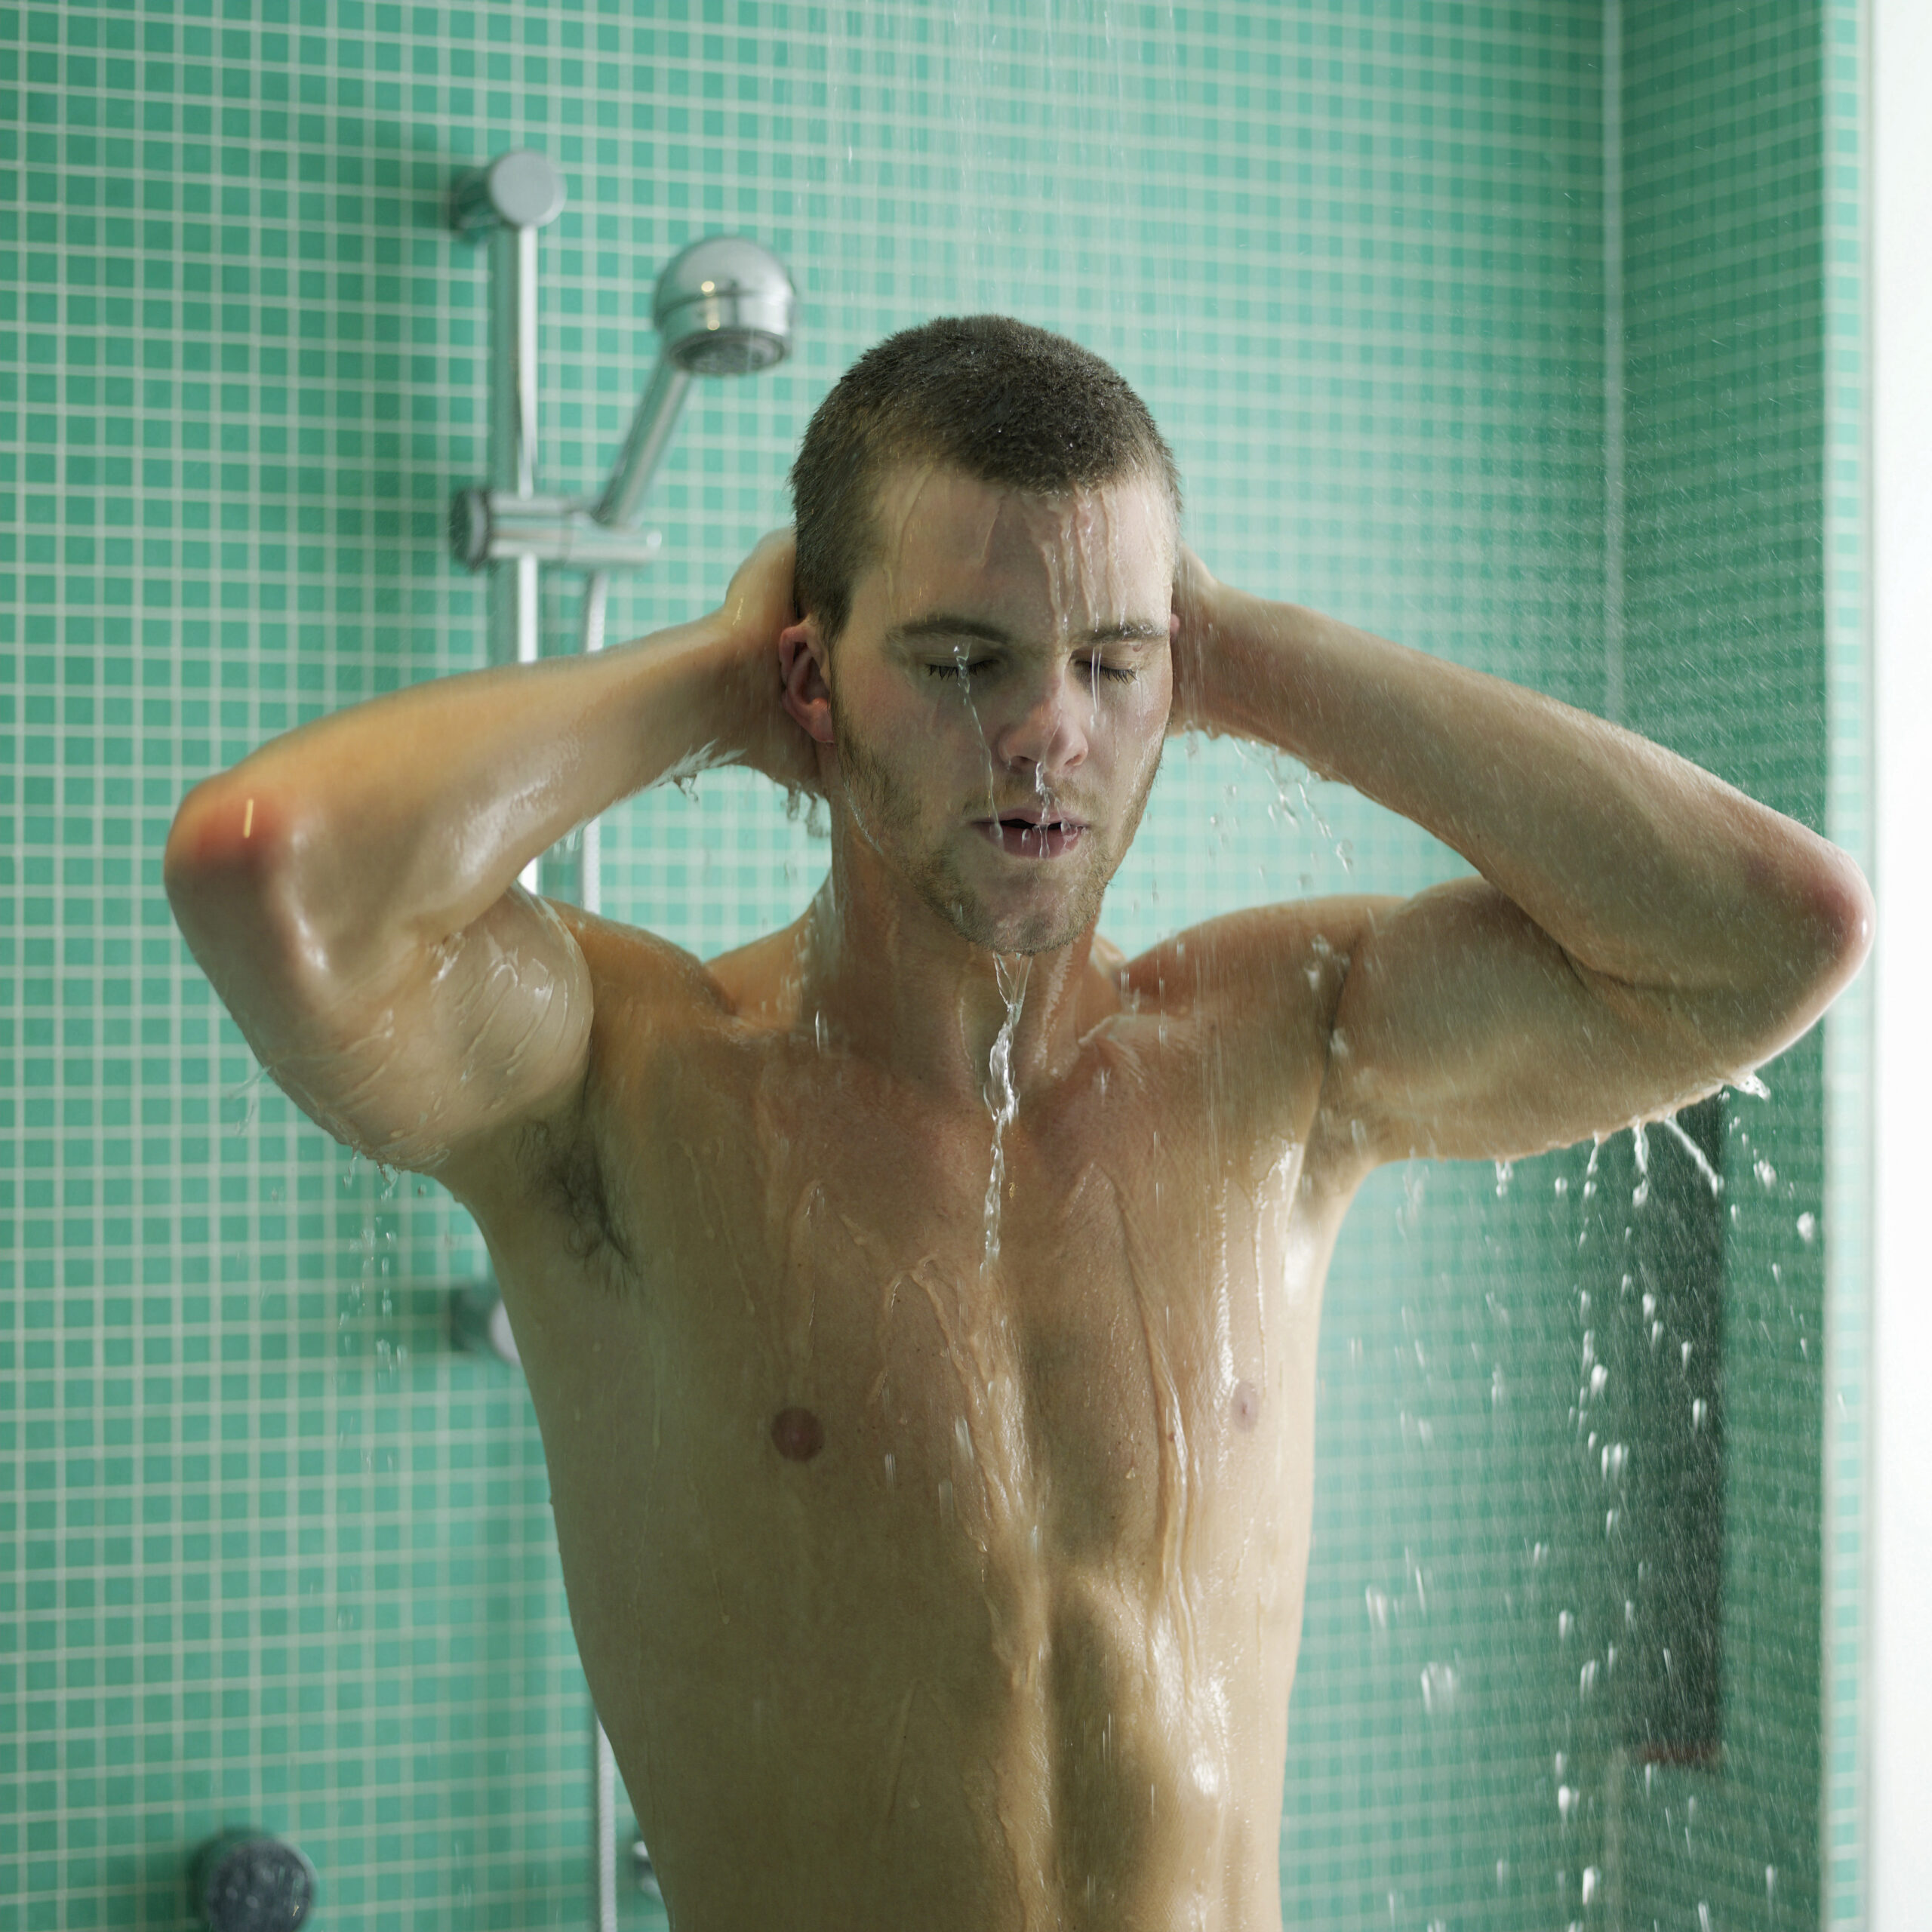 A man is enjoying water heater shower